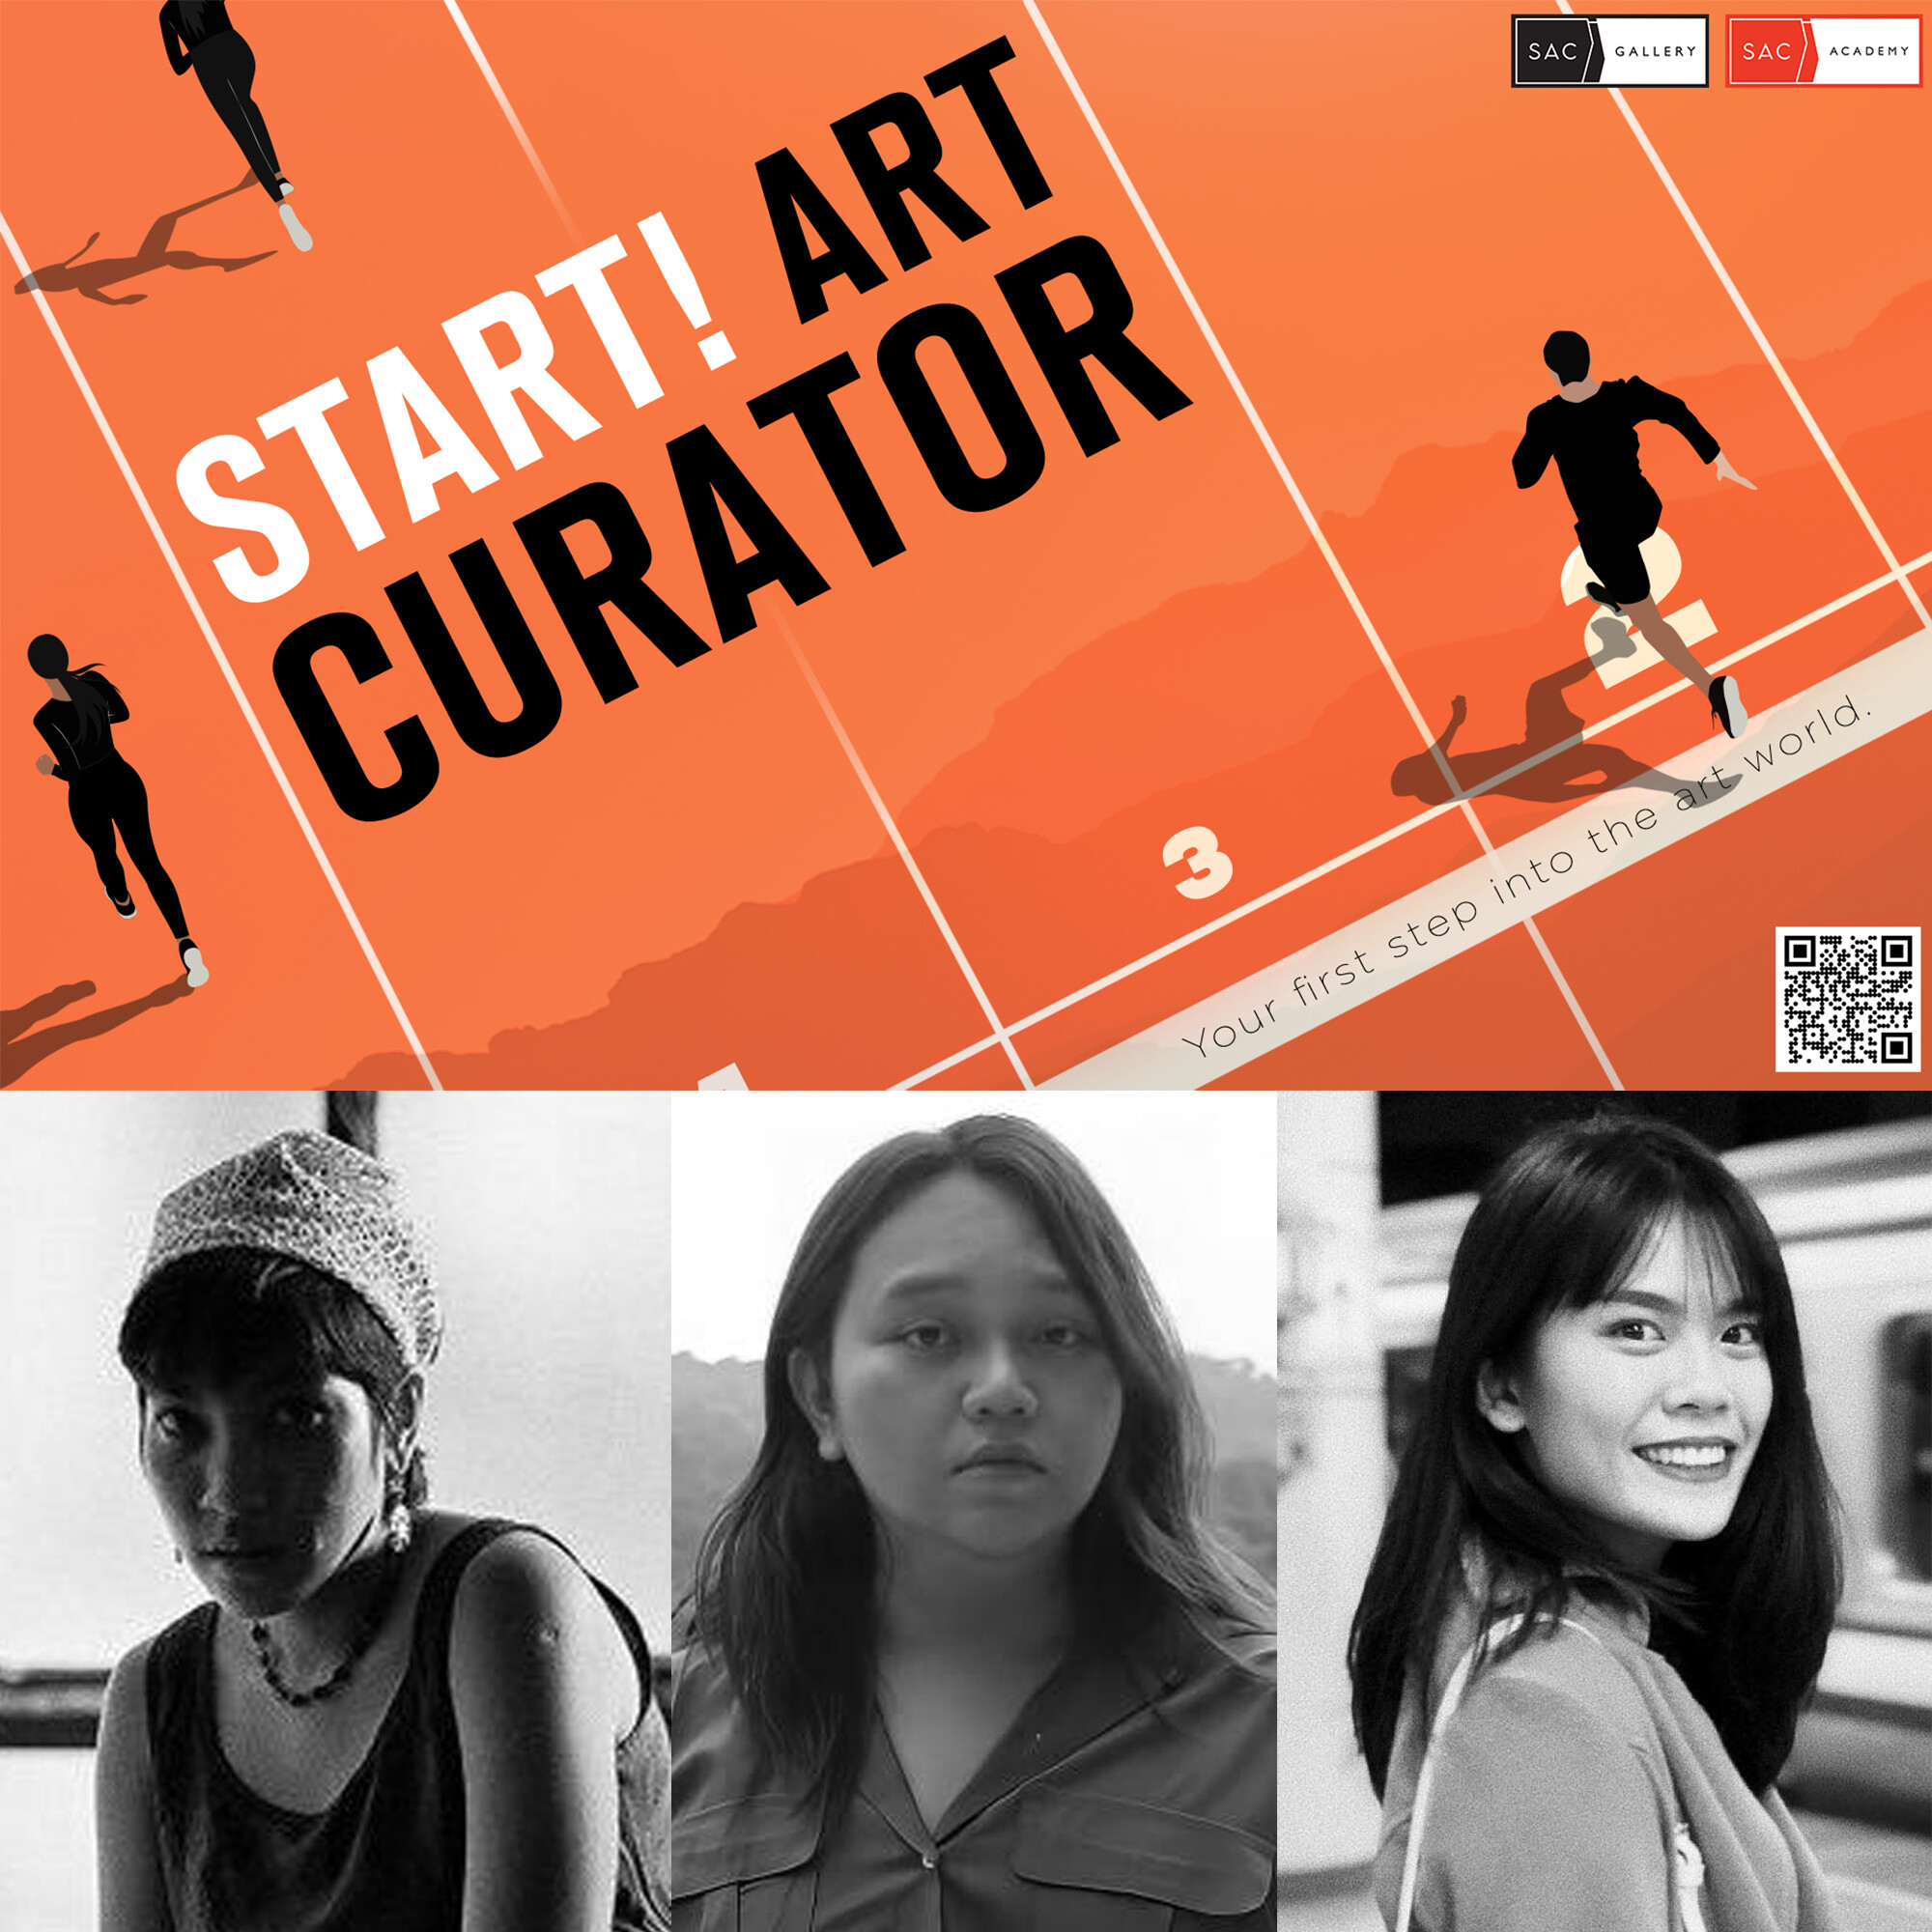 SAC Gallery สานต่อความสำเร็จ พร้อมเปิดตัว "Start! Art Curator" ภัณฑารักษ์รุ่นที่ 2 สู่วงการศิลปะไทย